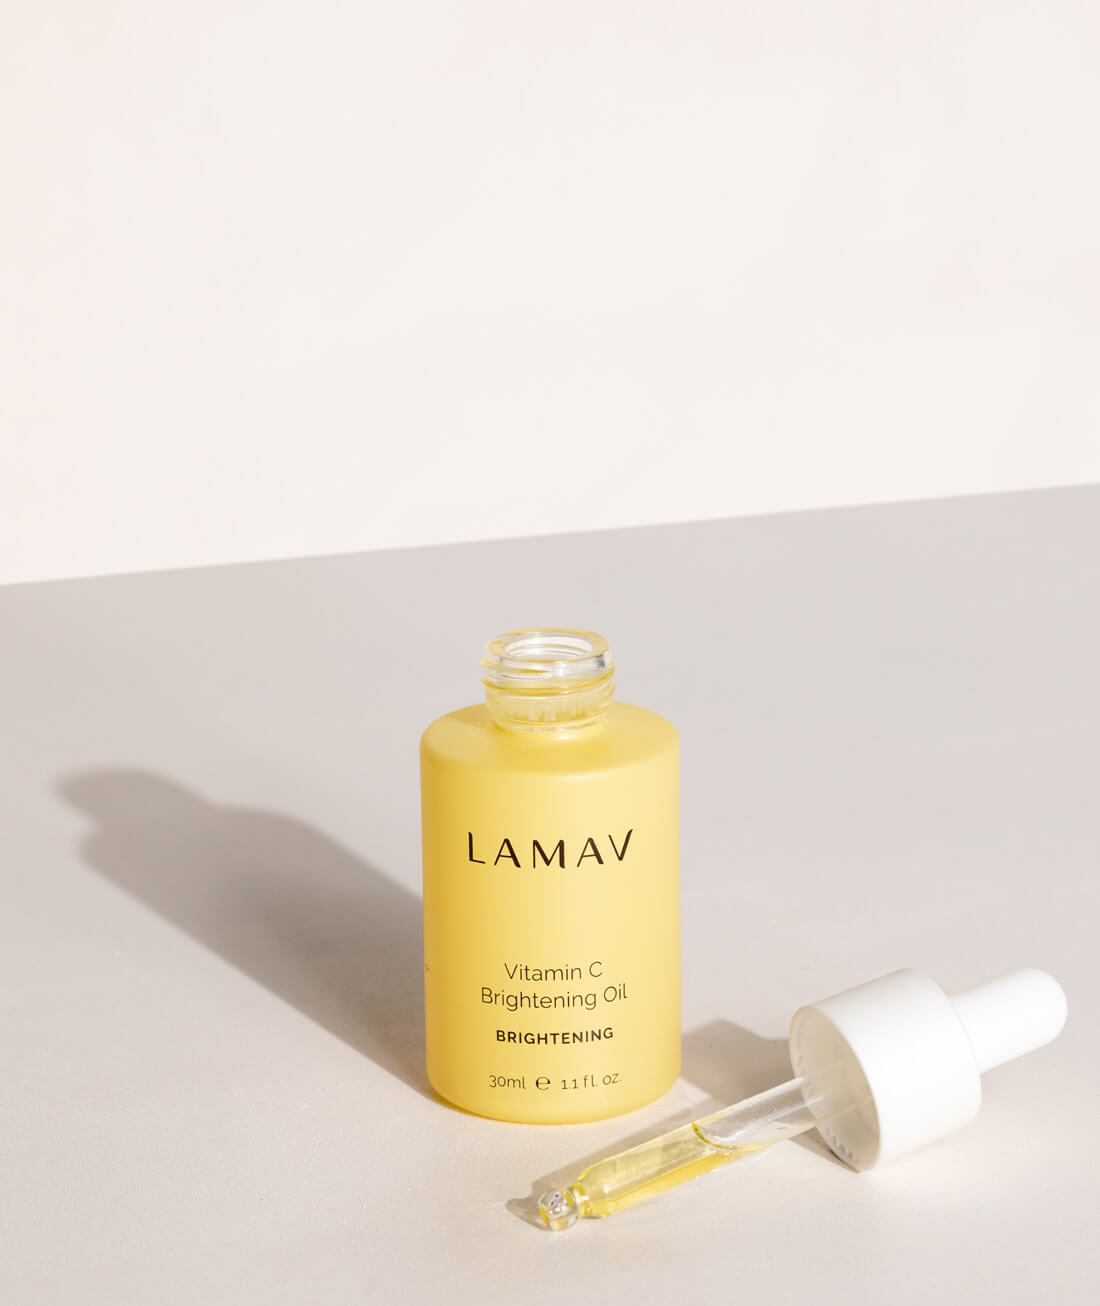 LAMAV Vitamin C Brightening Oil